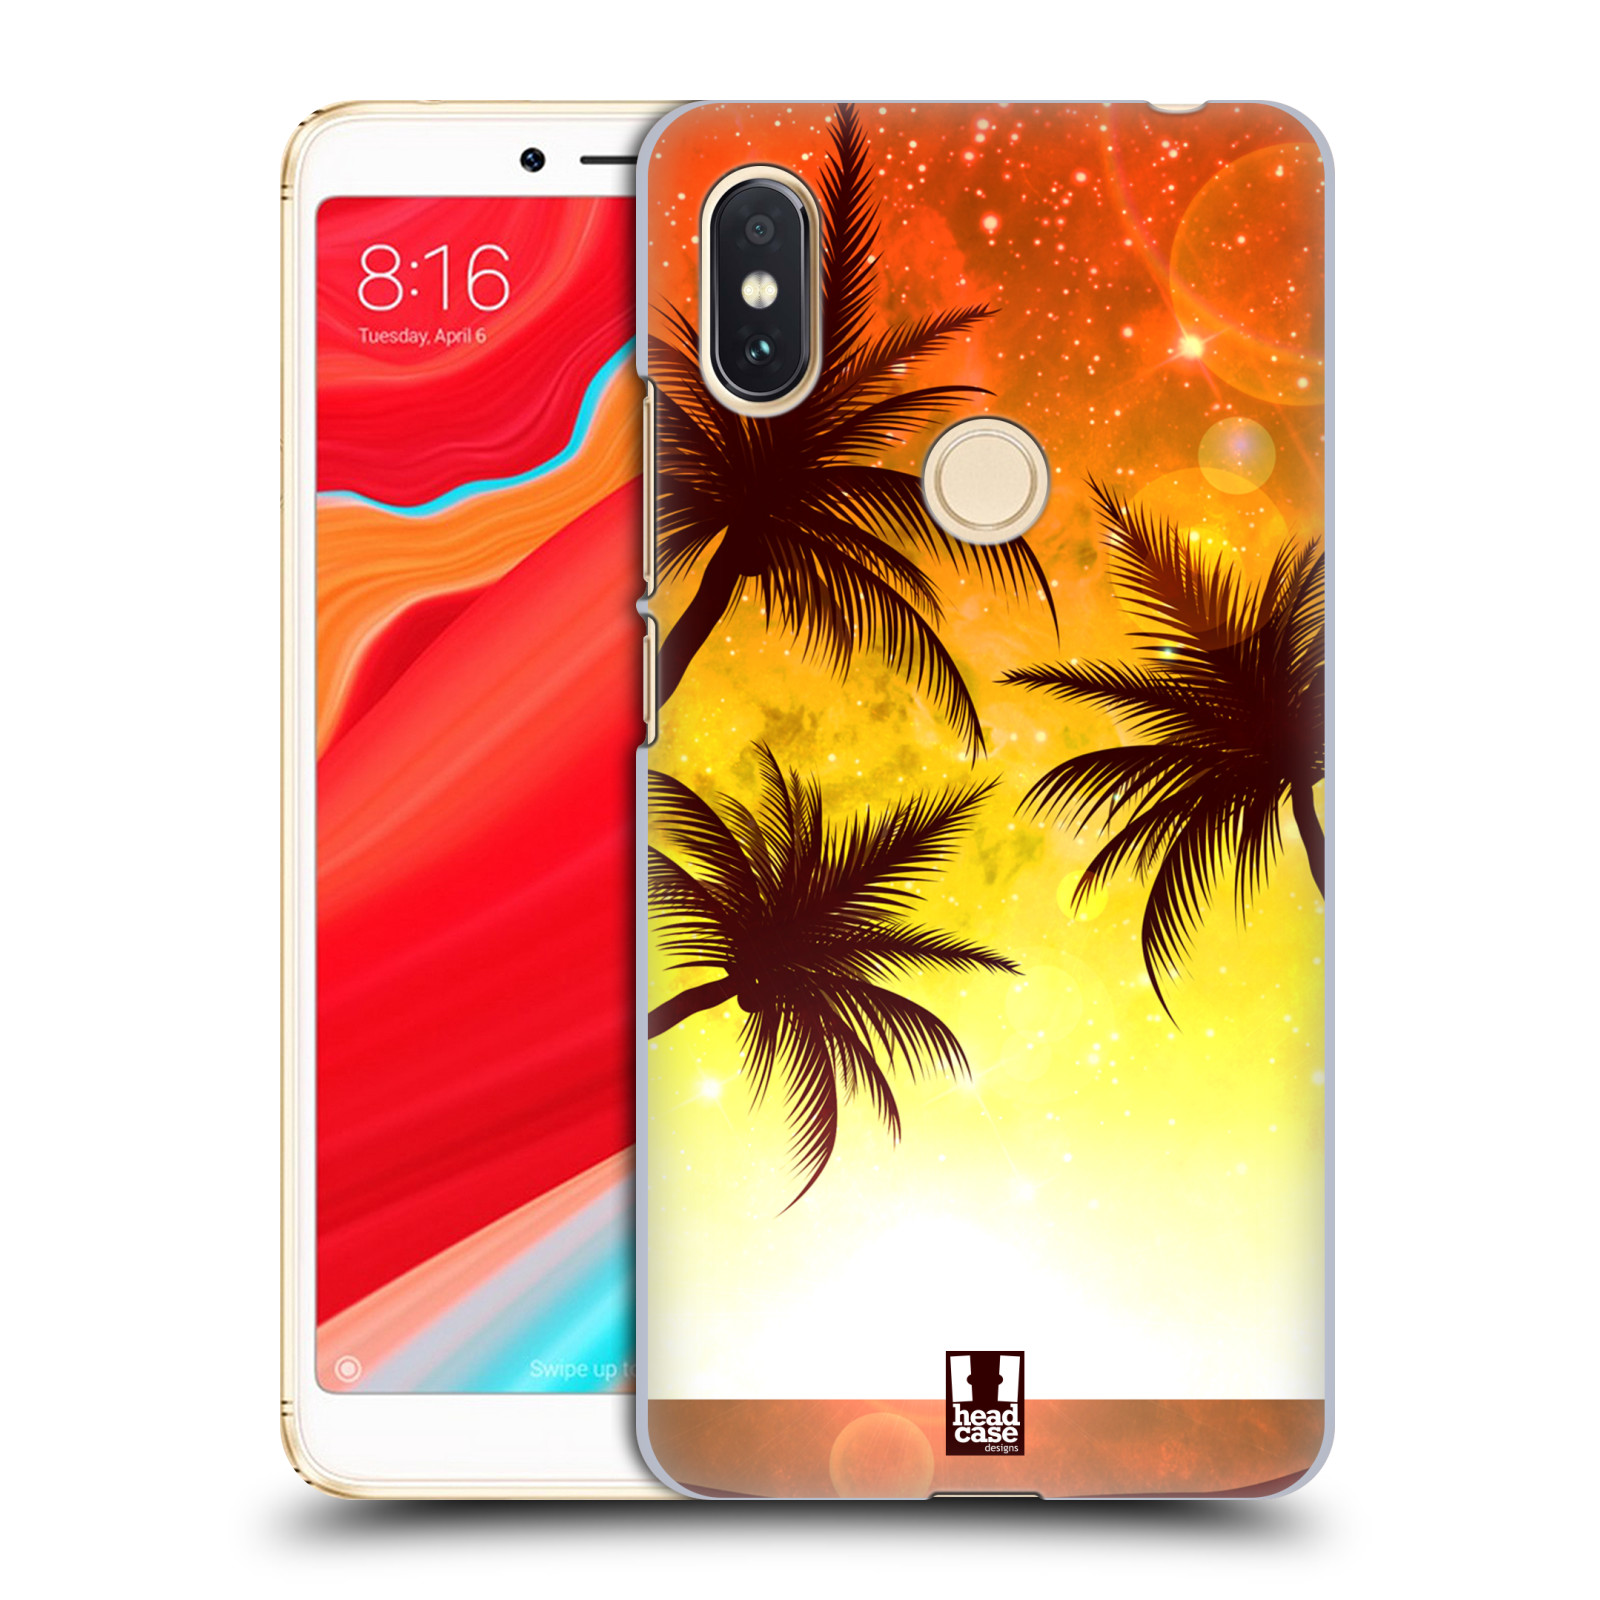 HEAD CASE plastový obal na mobil Xiaomi Redmi S2 vzor Kreslený motiv silueta moře a palmy ORANŽOVÁ